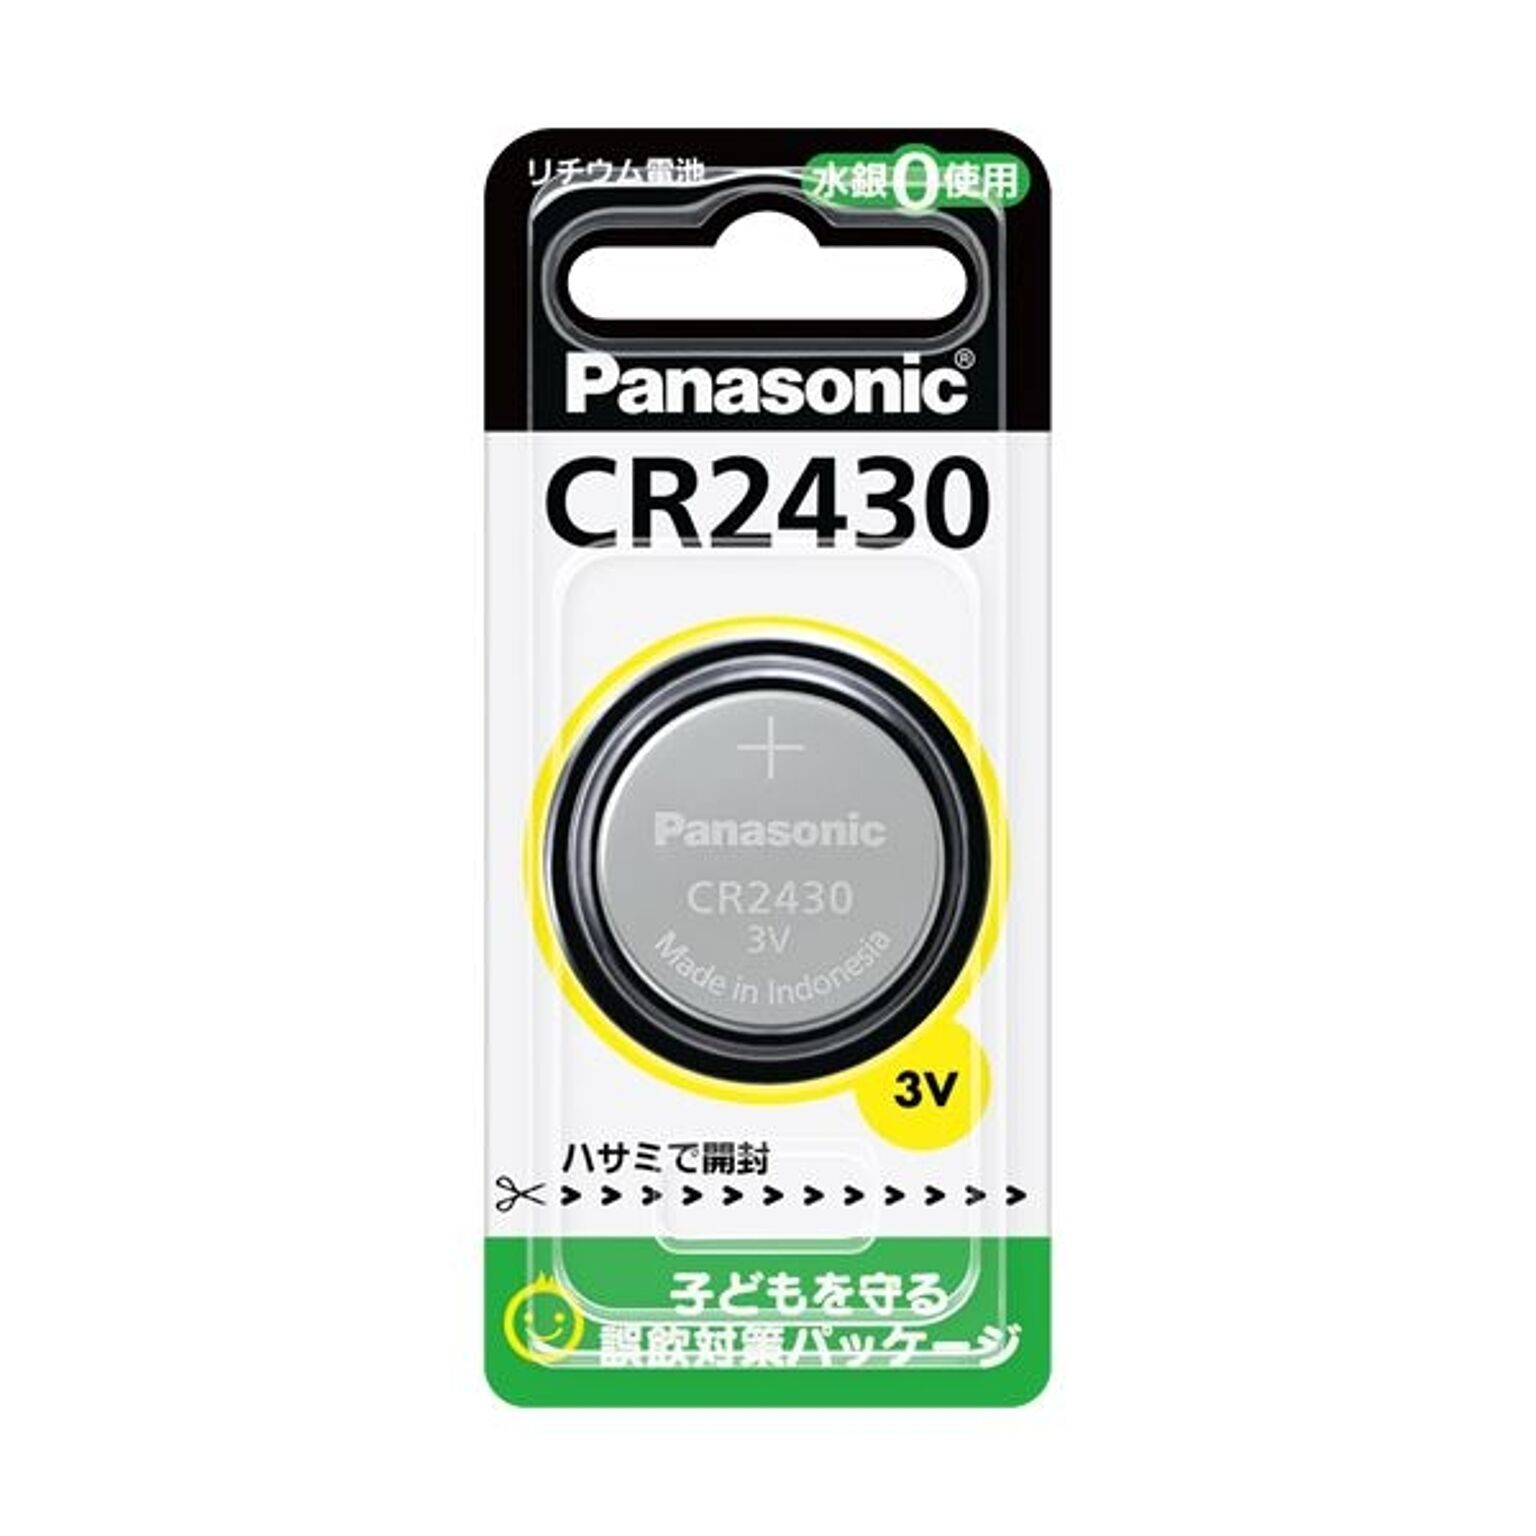 ボタン電池 リチウム電池 CR2032 ×2個 (163)